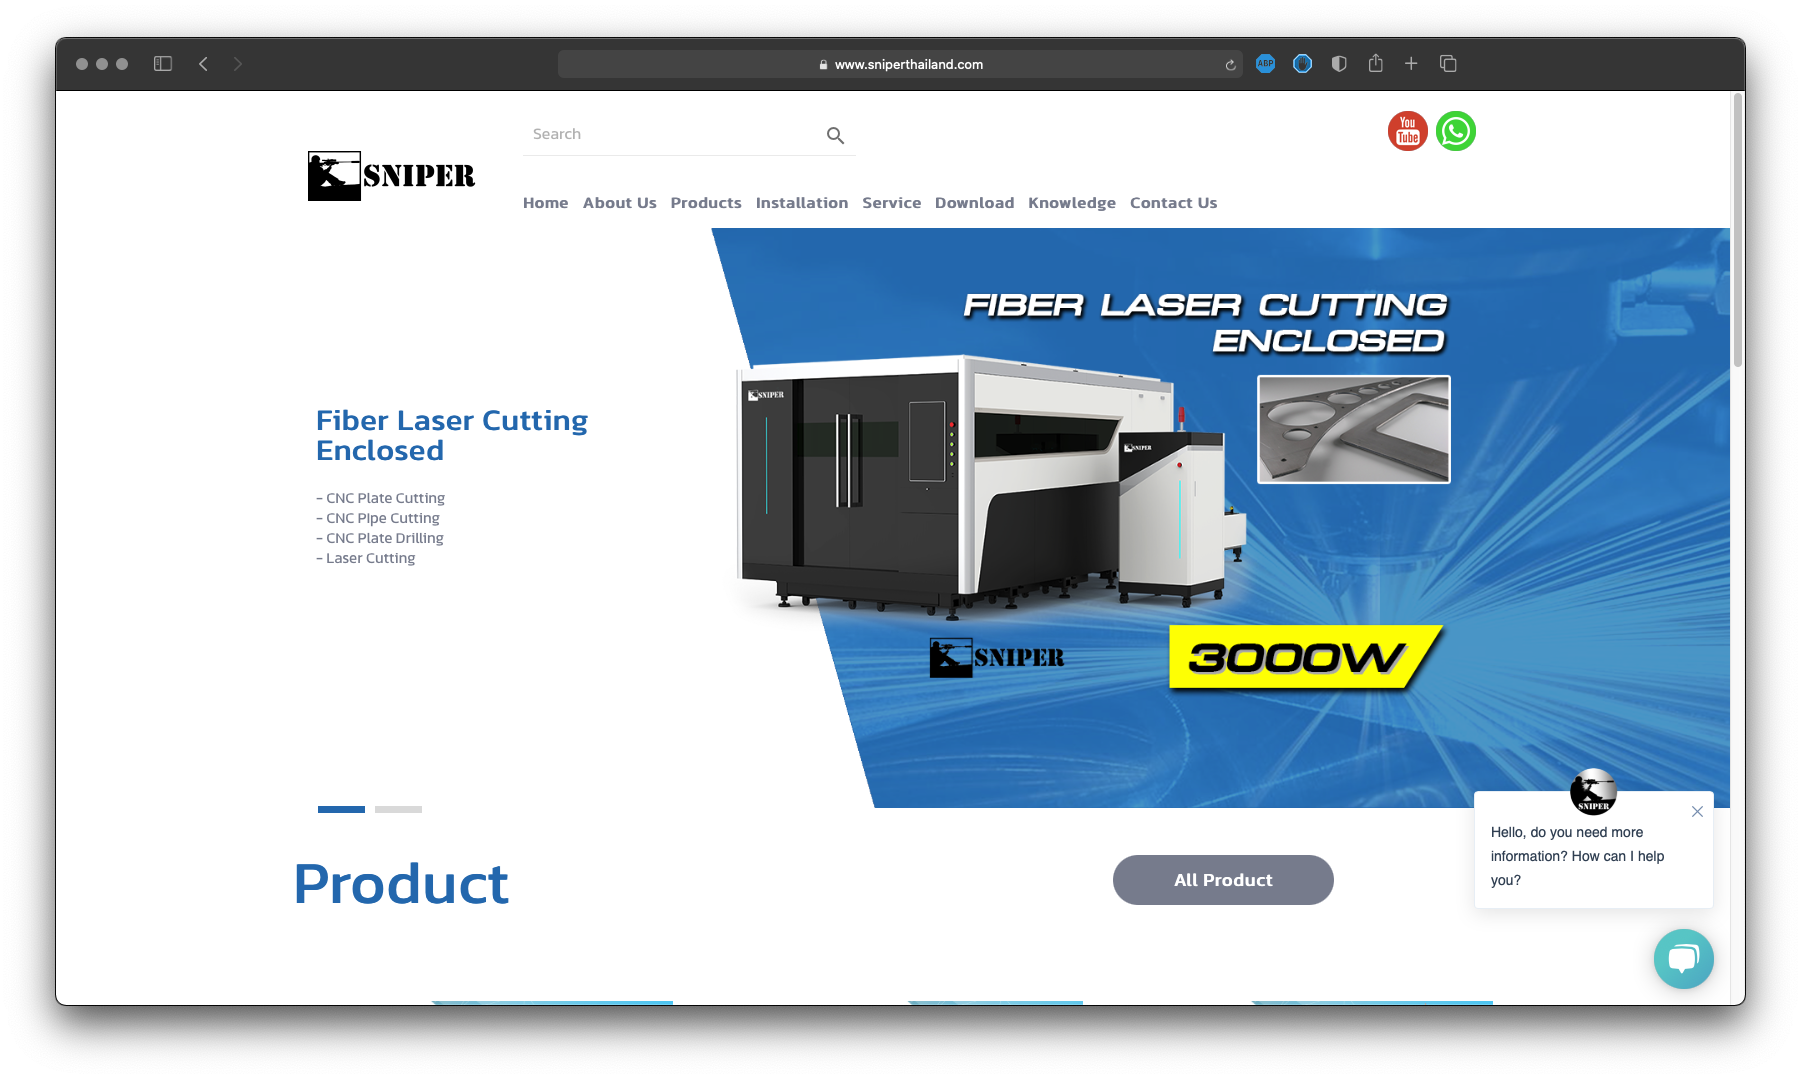 รับทำเว็บไซต์ รับออกแบบเว็บไซต์ เว็บไซต์สำเร็จรูป ตัวอย่างเว็บไซต์ดีไซน์ - อุตสาหกรรม Laser Plate Cutting TTT-WEBSITE